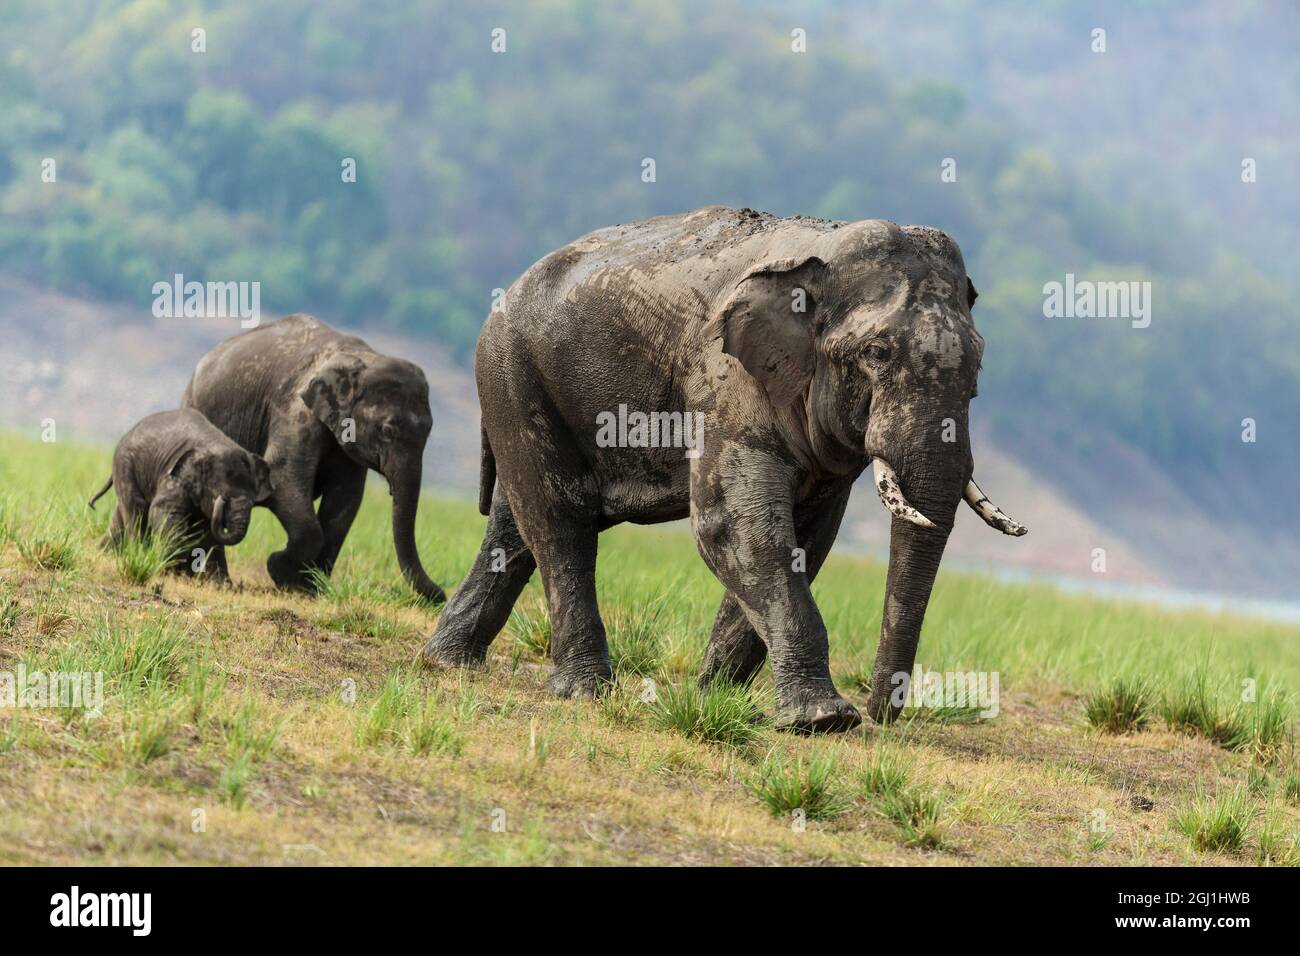 Asian Elephants on the move, Corbett National Park, India. Stock Photo